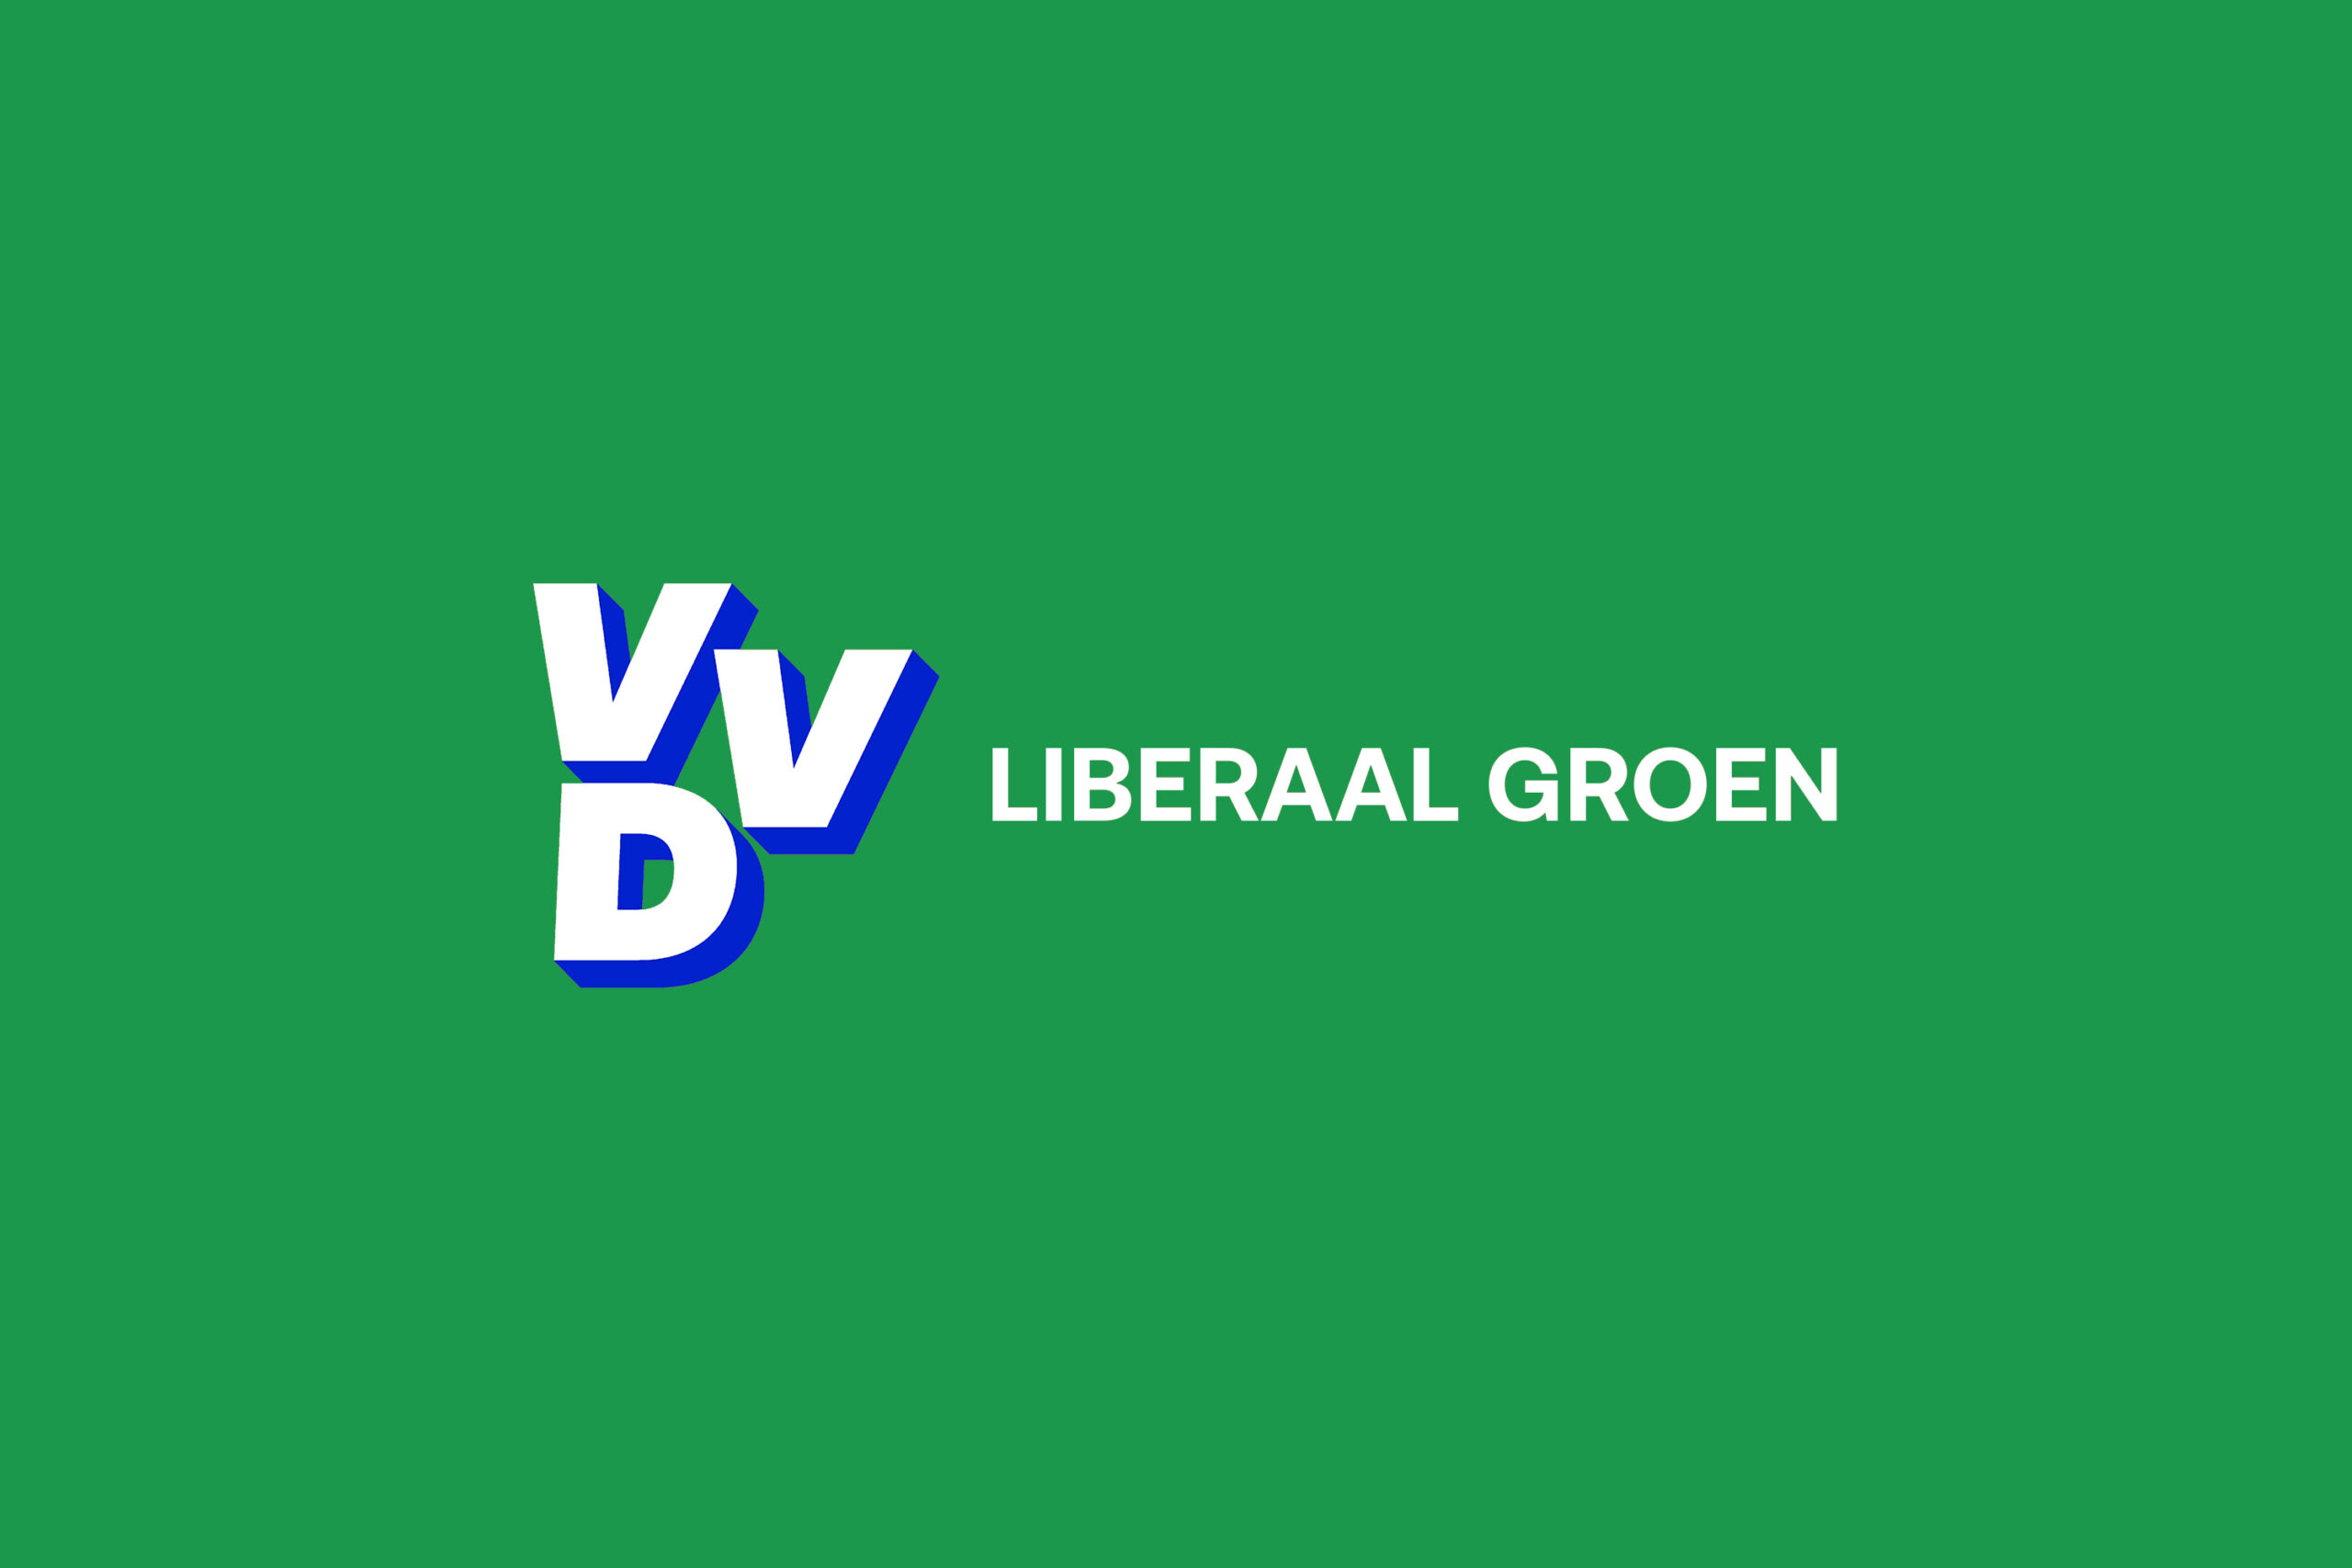 Liberaal Groen logo